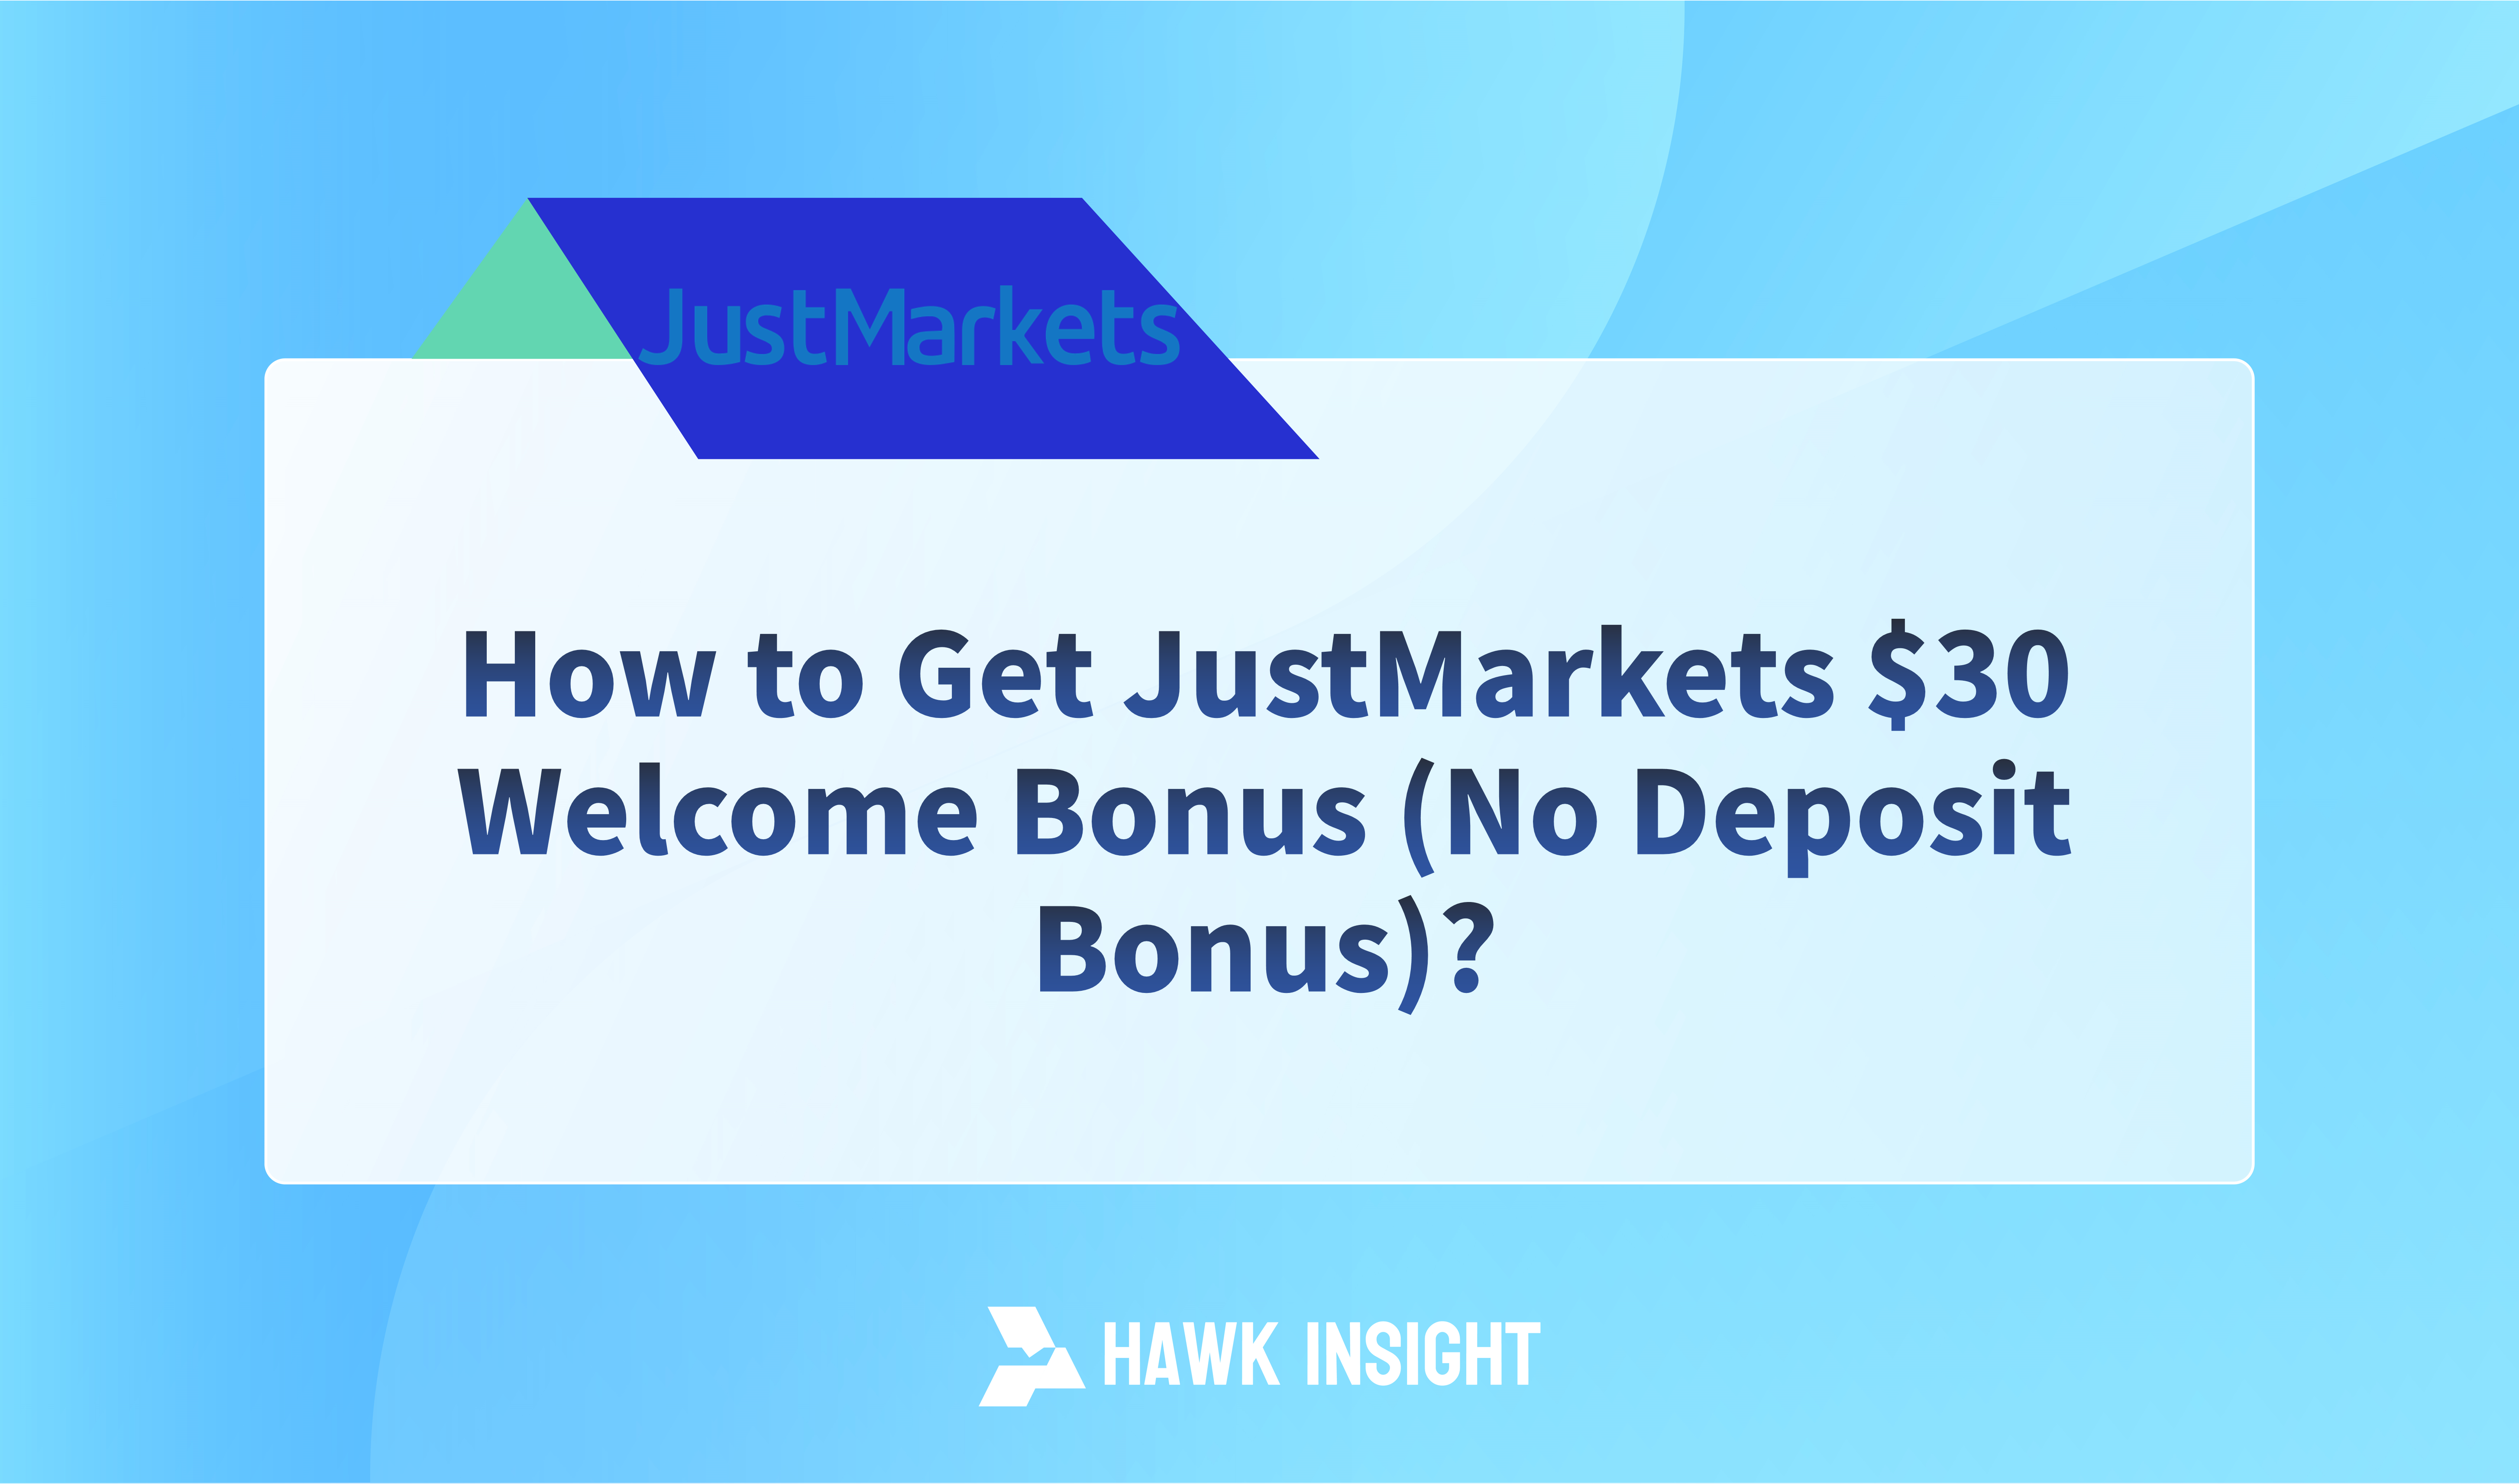 How to Get JustMarkets $30 Welcome Bonus?